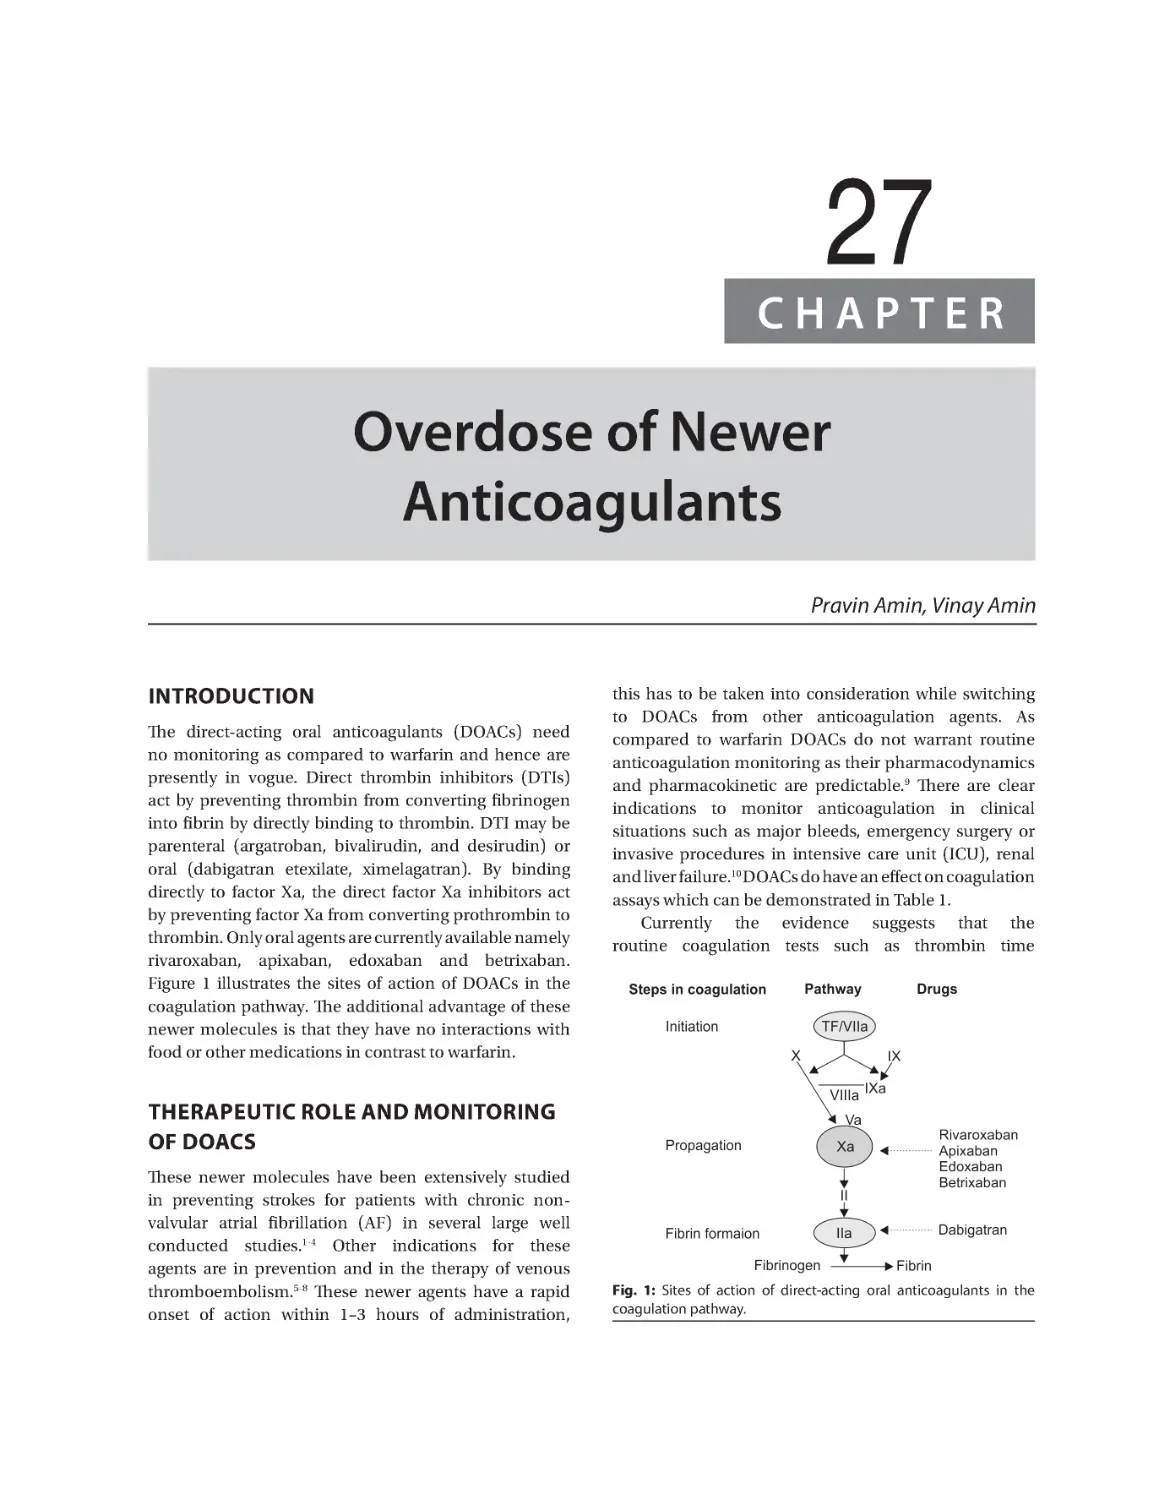 Chapter 27: Overdose of Newer Anticoagulants